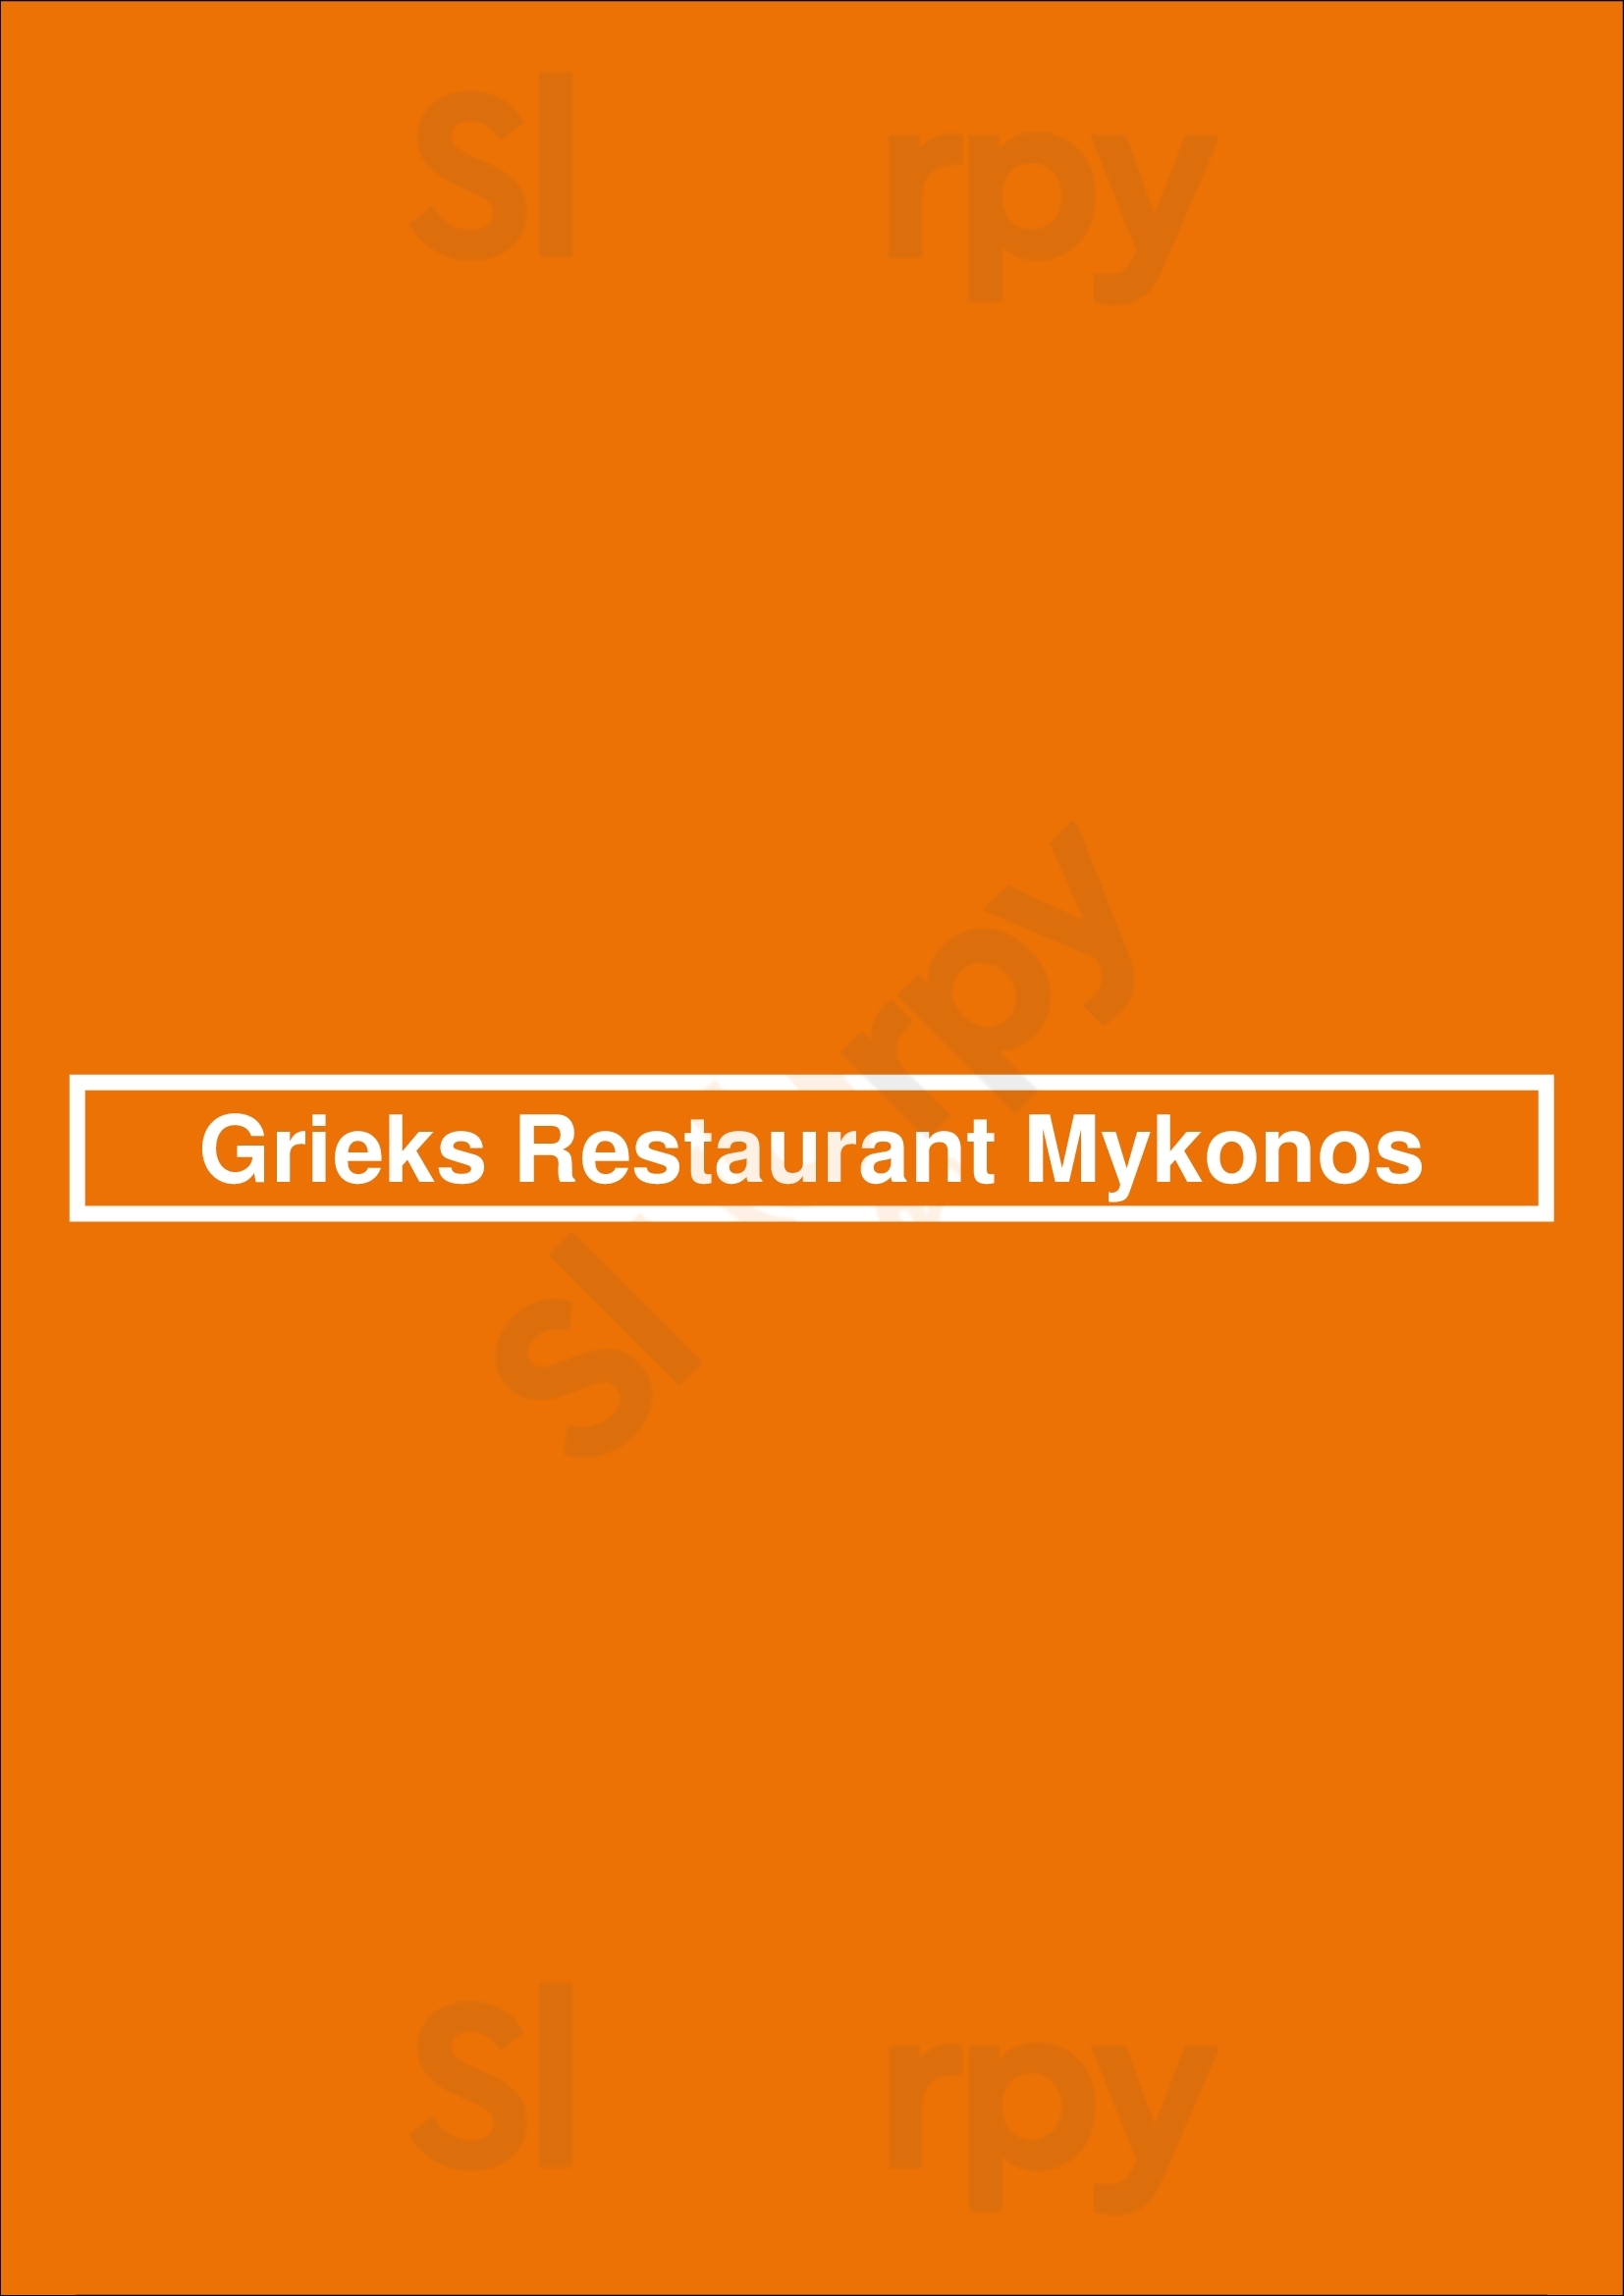 Grieks Restaurant Mykonos Leusden Menu - 1